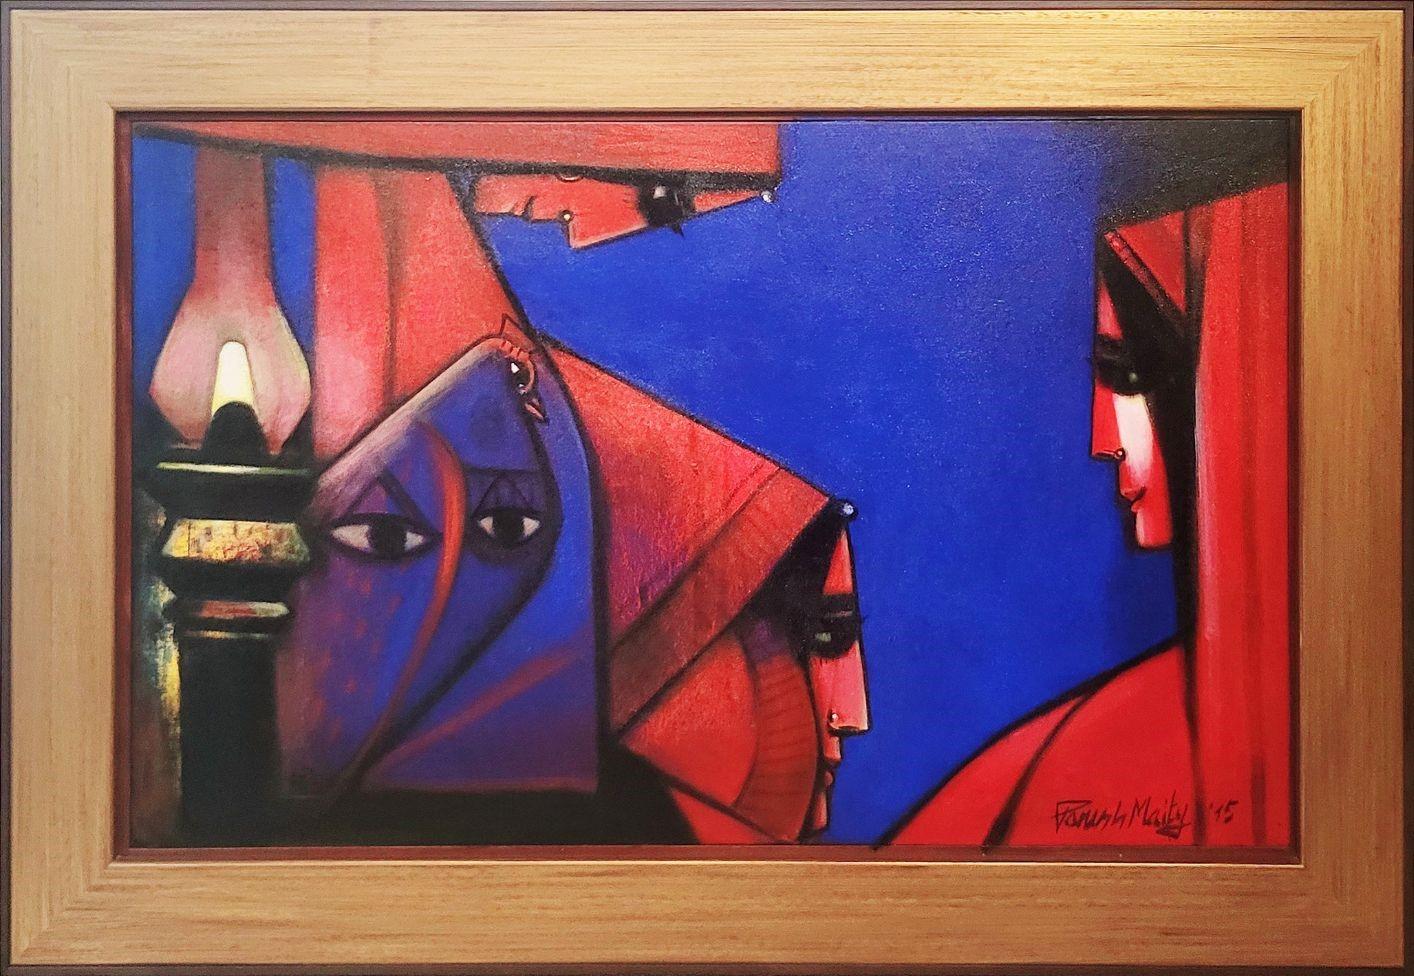 Paresh Maity - Ewiges Dreieck
30 x 48 Zoll ( Ungekürzte Größe ) 
58,1 x 40,1 Zoll (  Gerahmte Größe )
Öl auf Leinwand
2015

Paresh Maity ist einer der meistgepriesenen zeitgenössischen Künstler Indiens. Seine Werke befinden sich in verschiedenen